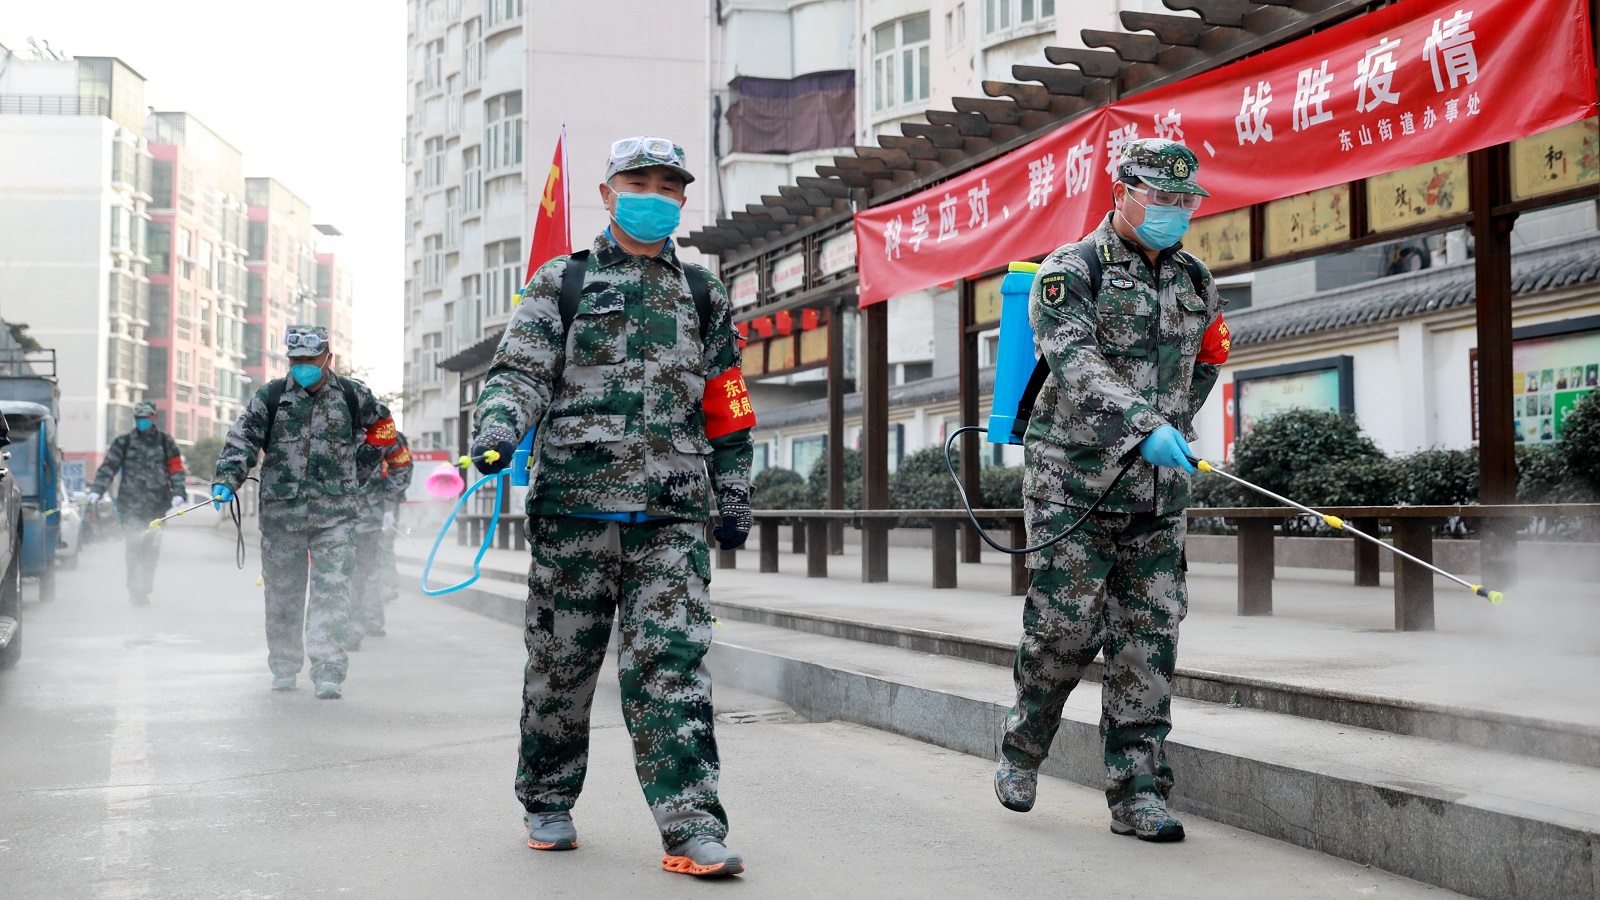 دعاوى قضائية دولية ضد الصين: مسؤولة عن انتشار كورونا